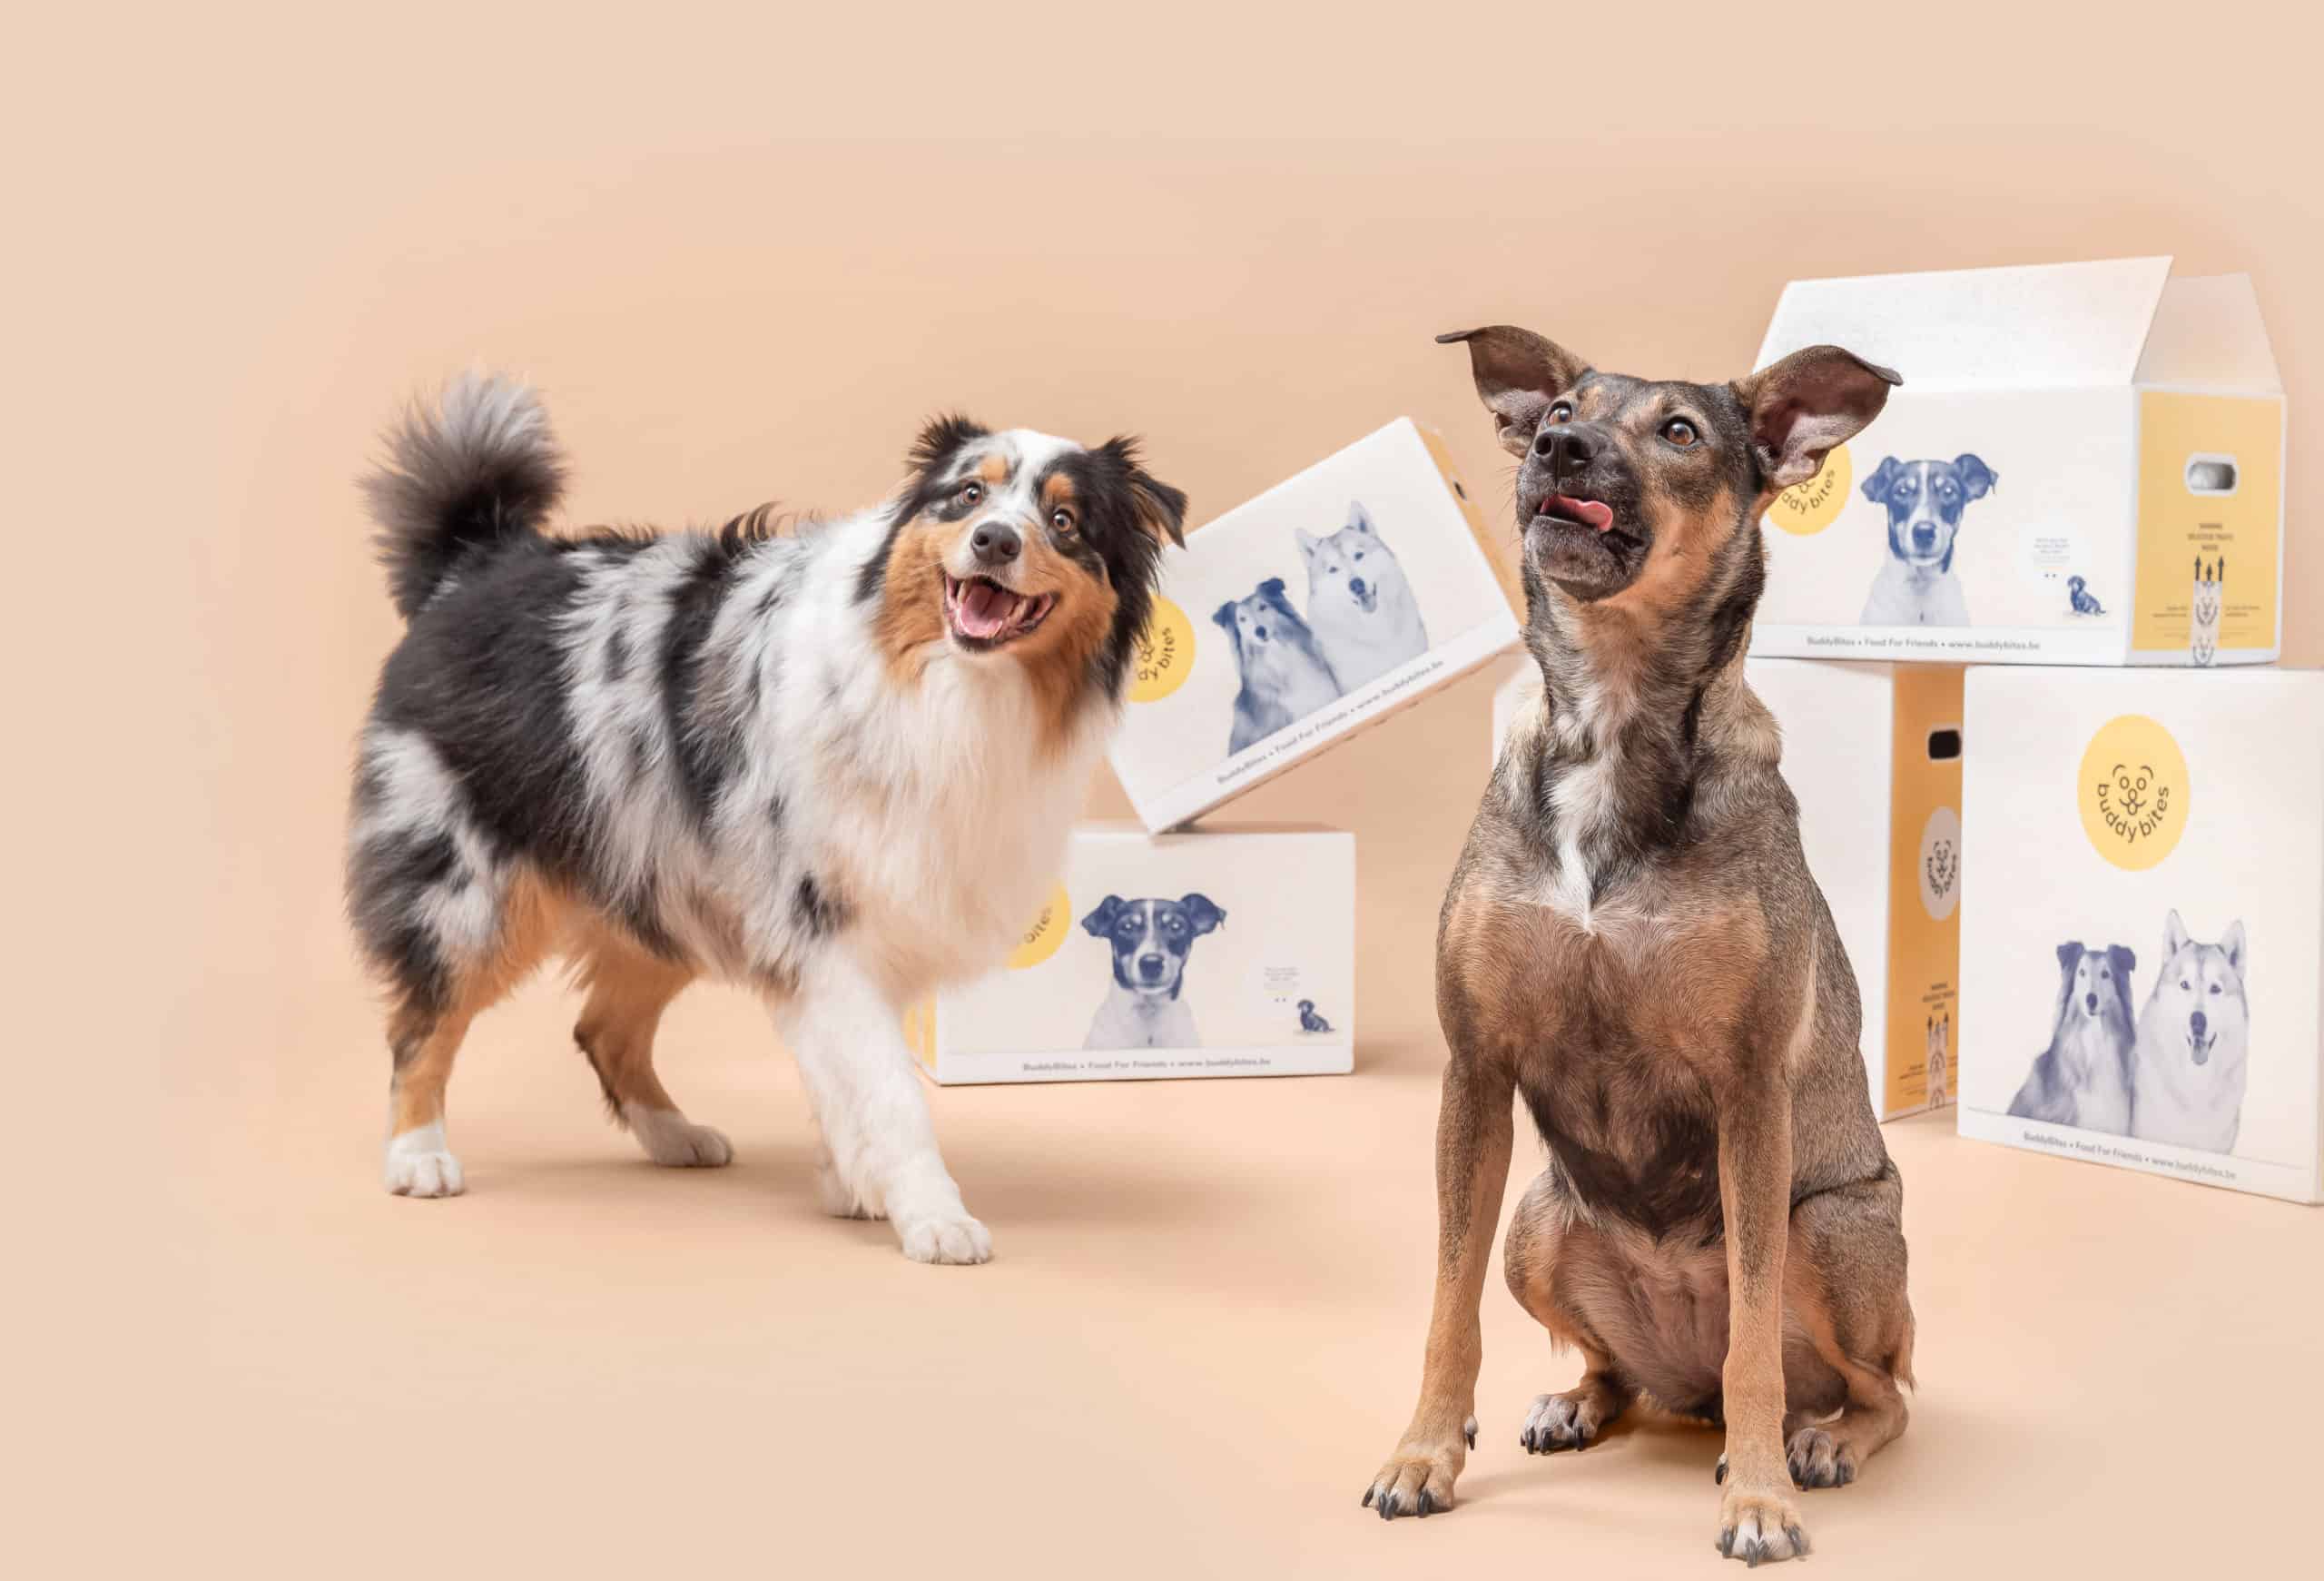 twee lachende honden kijken in de camera met dozen van BuddyBites op de achtergrond